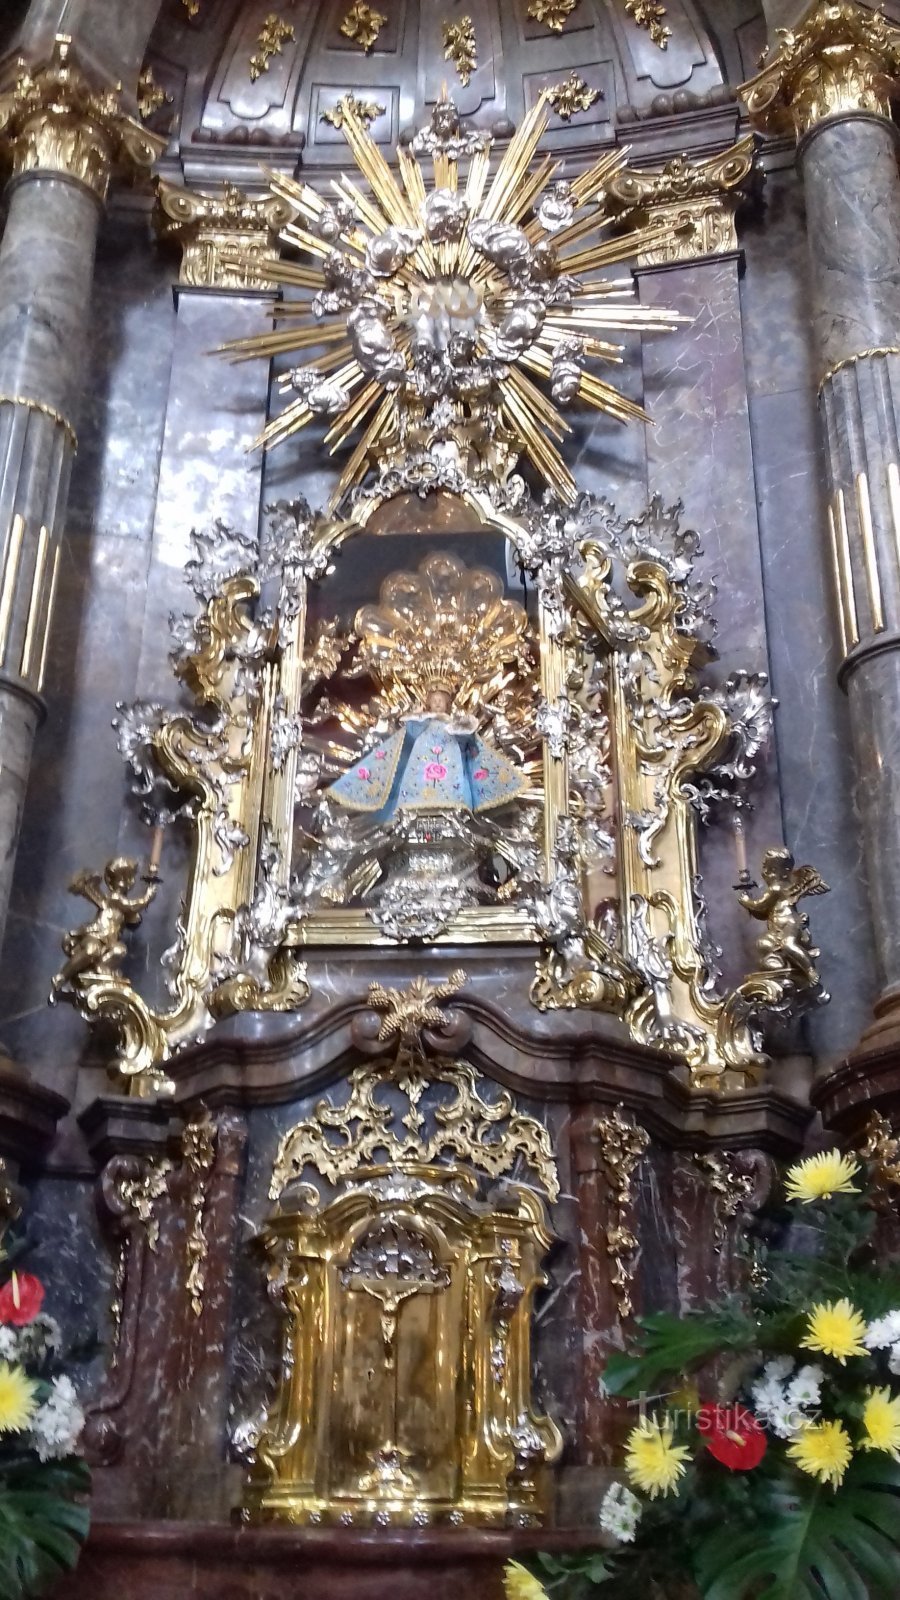 Oltár Pražského Jezulátka so soškou Jezulátka